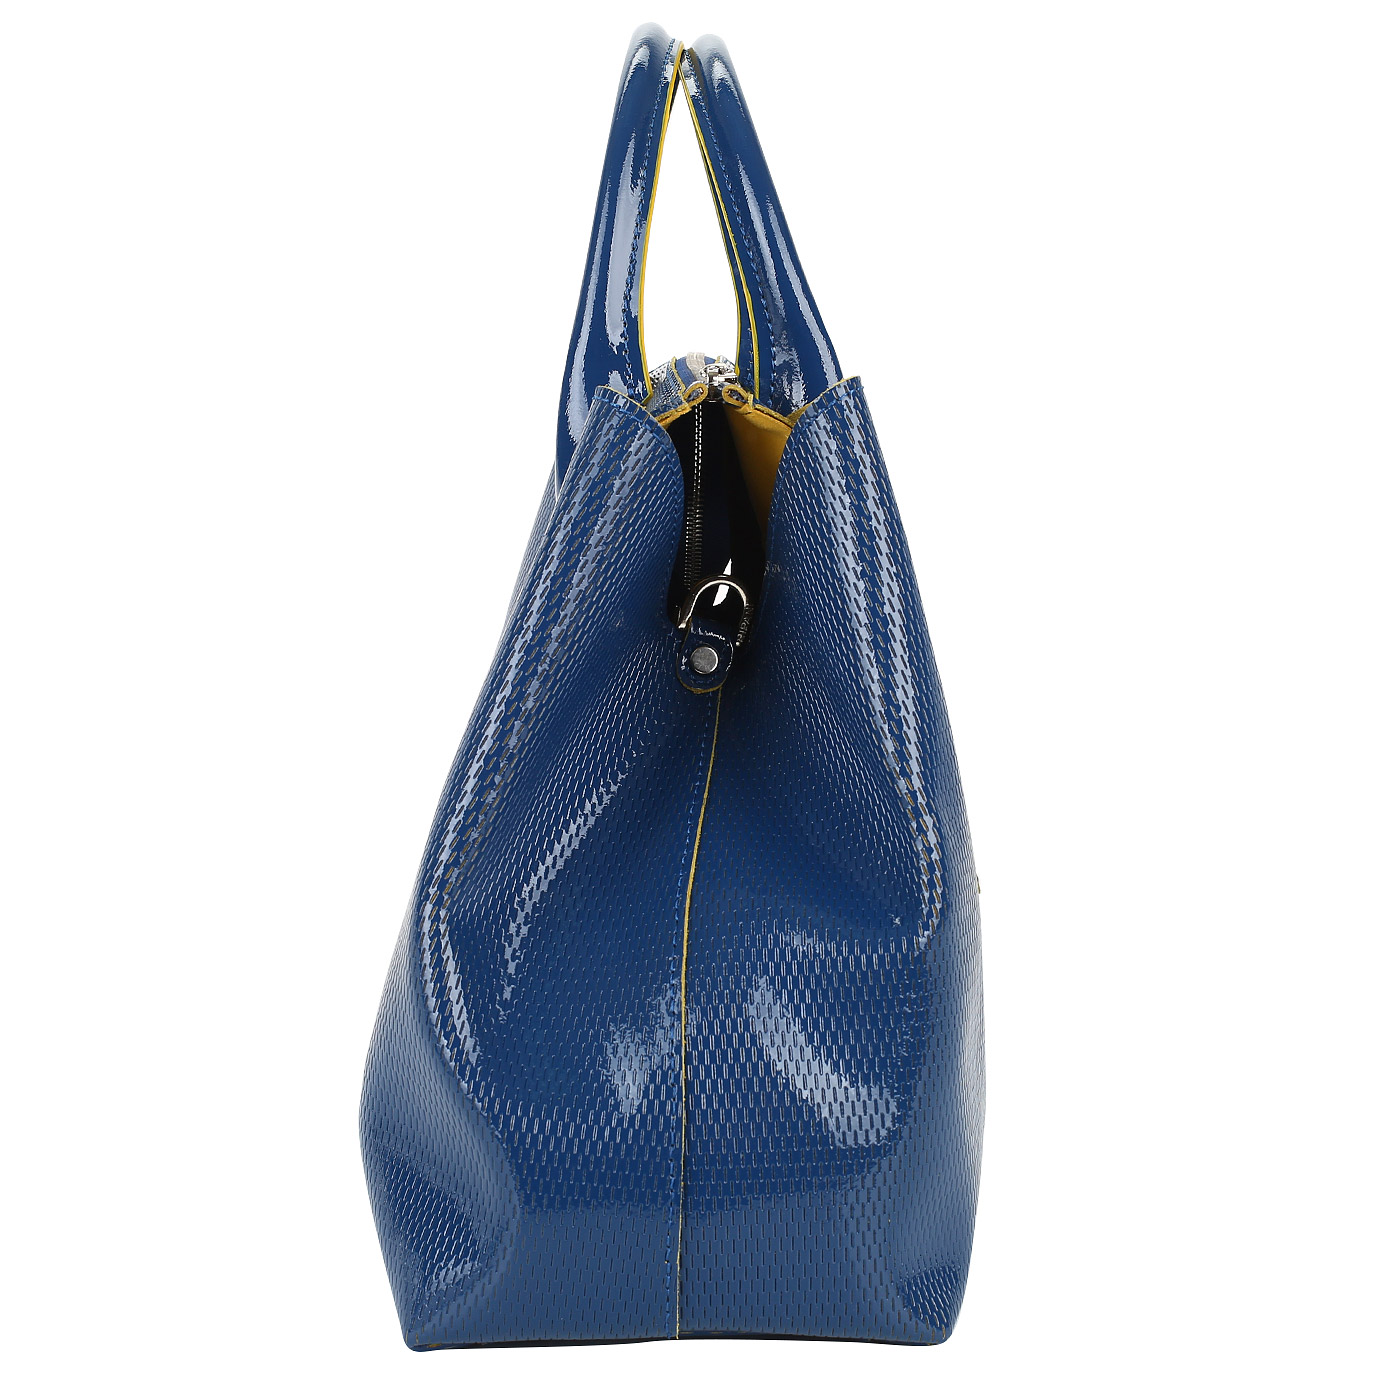 Синяя сумка из натуральной кожи Ripani Glassa